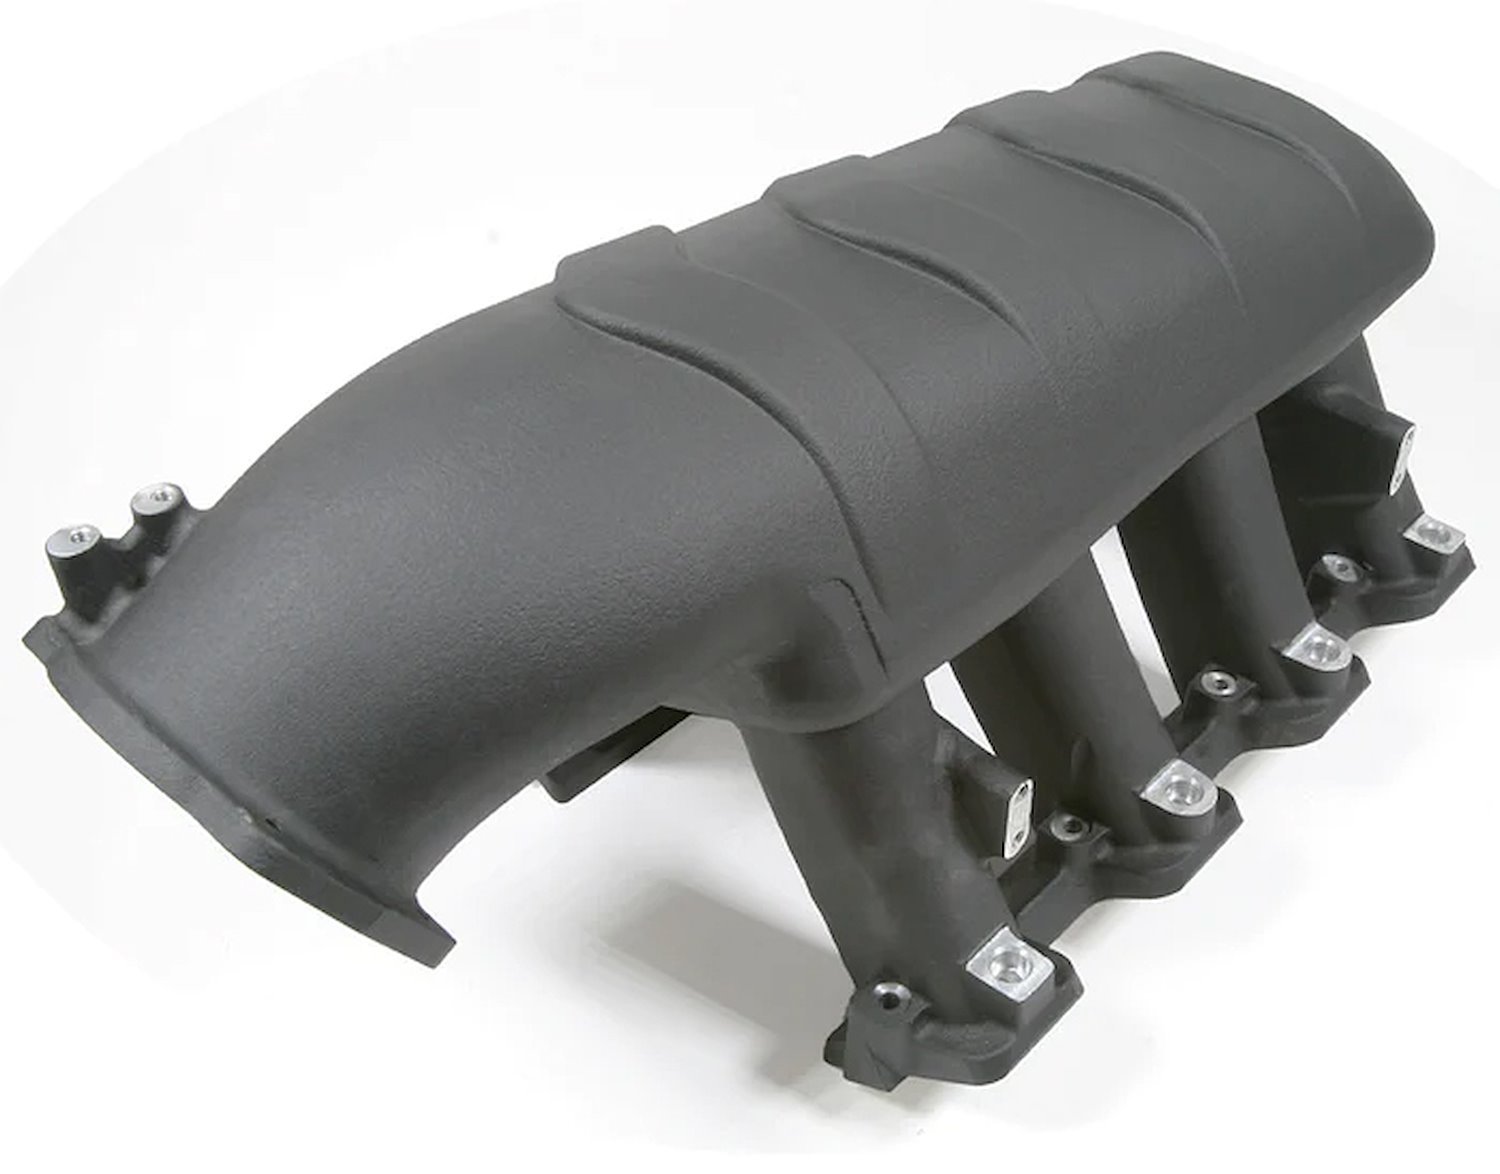 AM2011B Hi-Ram Intake Manifold, for GM LS1/LS2/LS6, with Fuel Rail Kit [Black Finish]